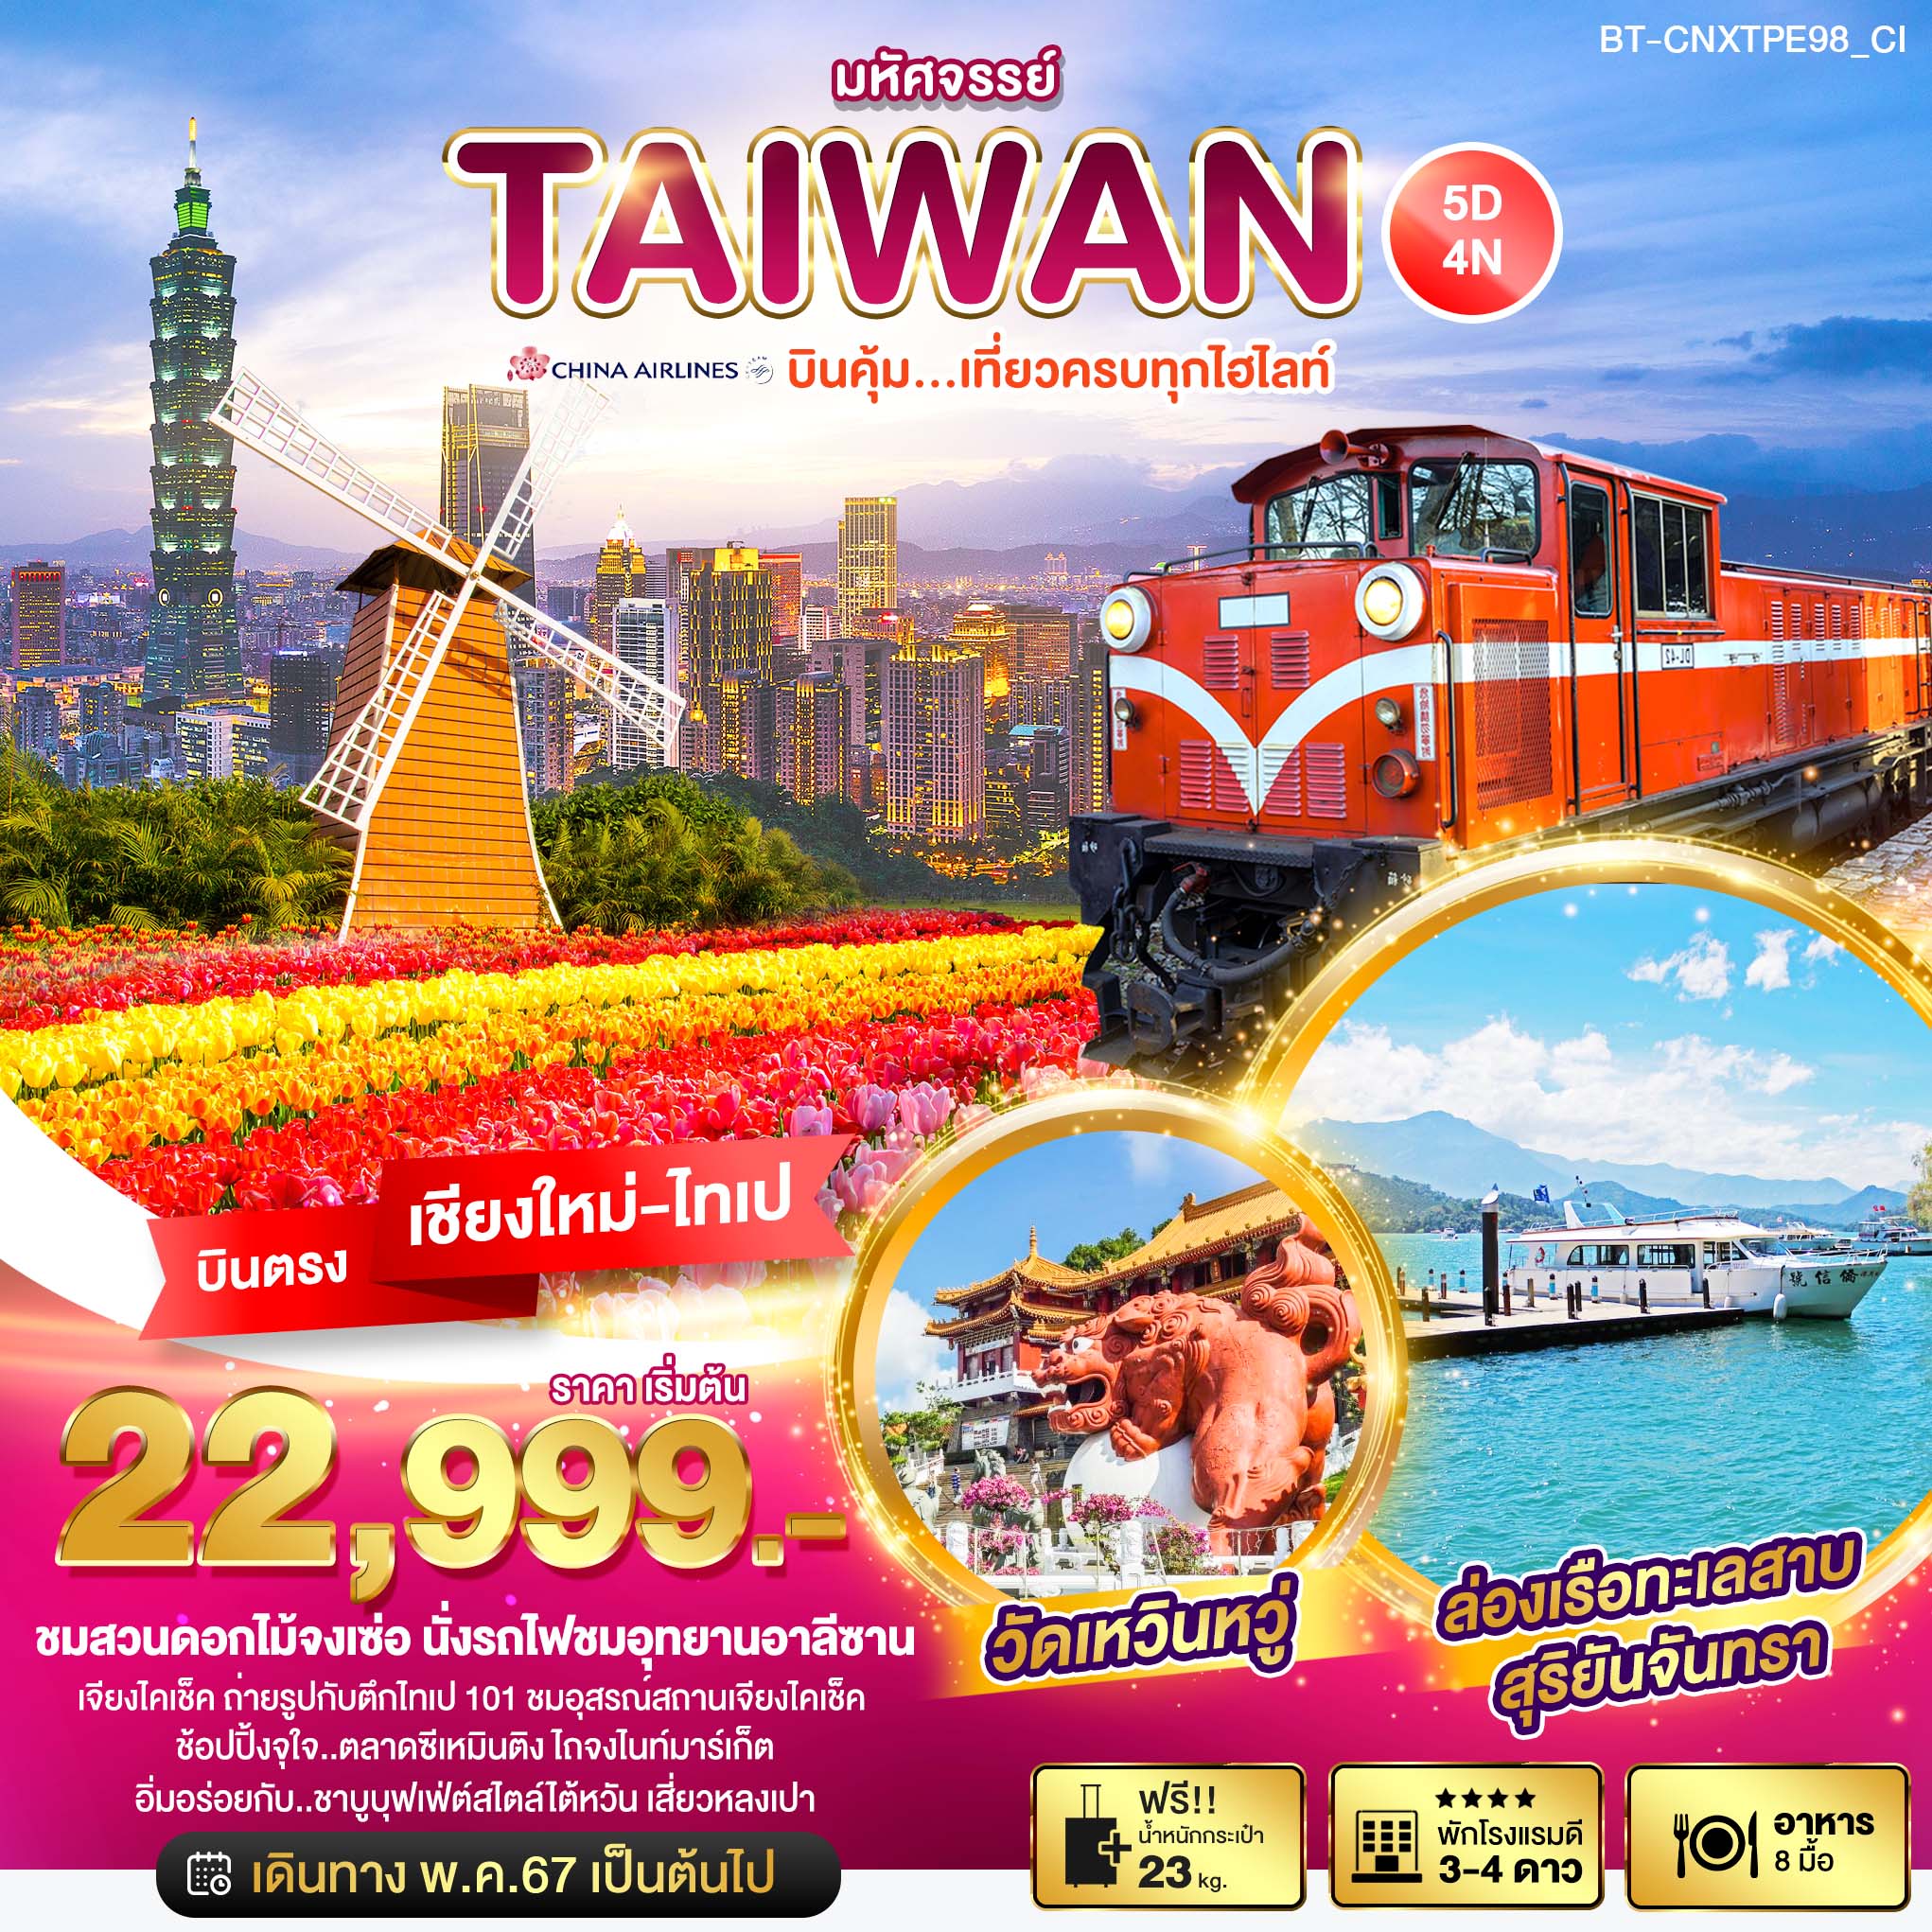 ทัวร์ไต้หวัน มหัศจรรย์ TAIWAN บินคุ้ม เที่ยวครบทุกไฮไลท์ 5วัน 4คืน (CI)